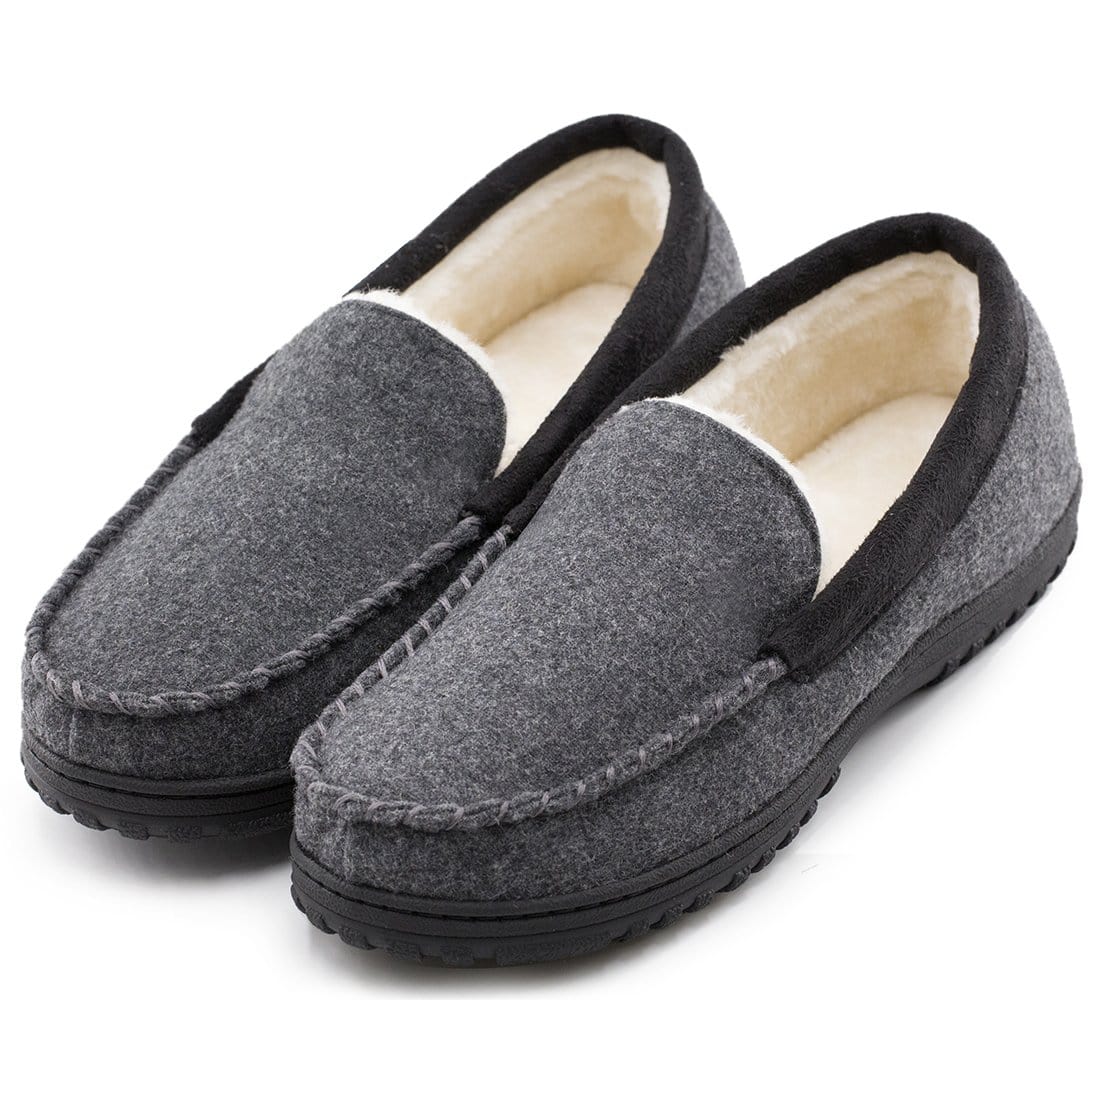 EverFoams Men's Wool-Felt Plush Fleece Lined Moccasin Slippers-Dark Grey